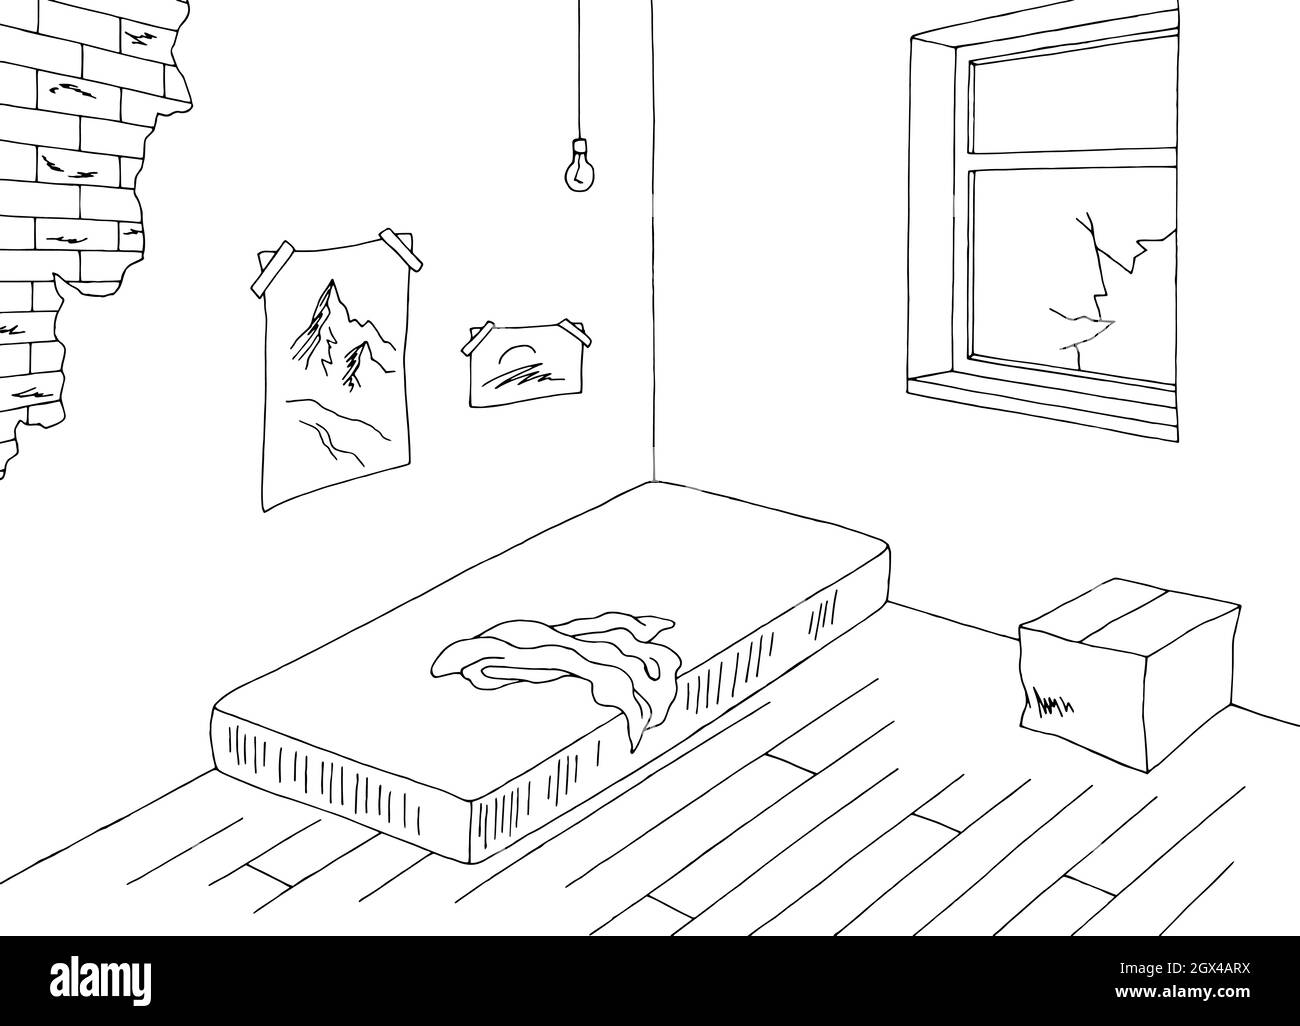 Image de pièce médiocre noir blanc vide intérieur de la maison dessin vecteur d'illustration Illustration de Vecteur